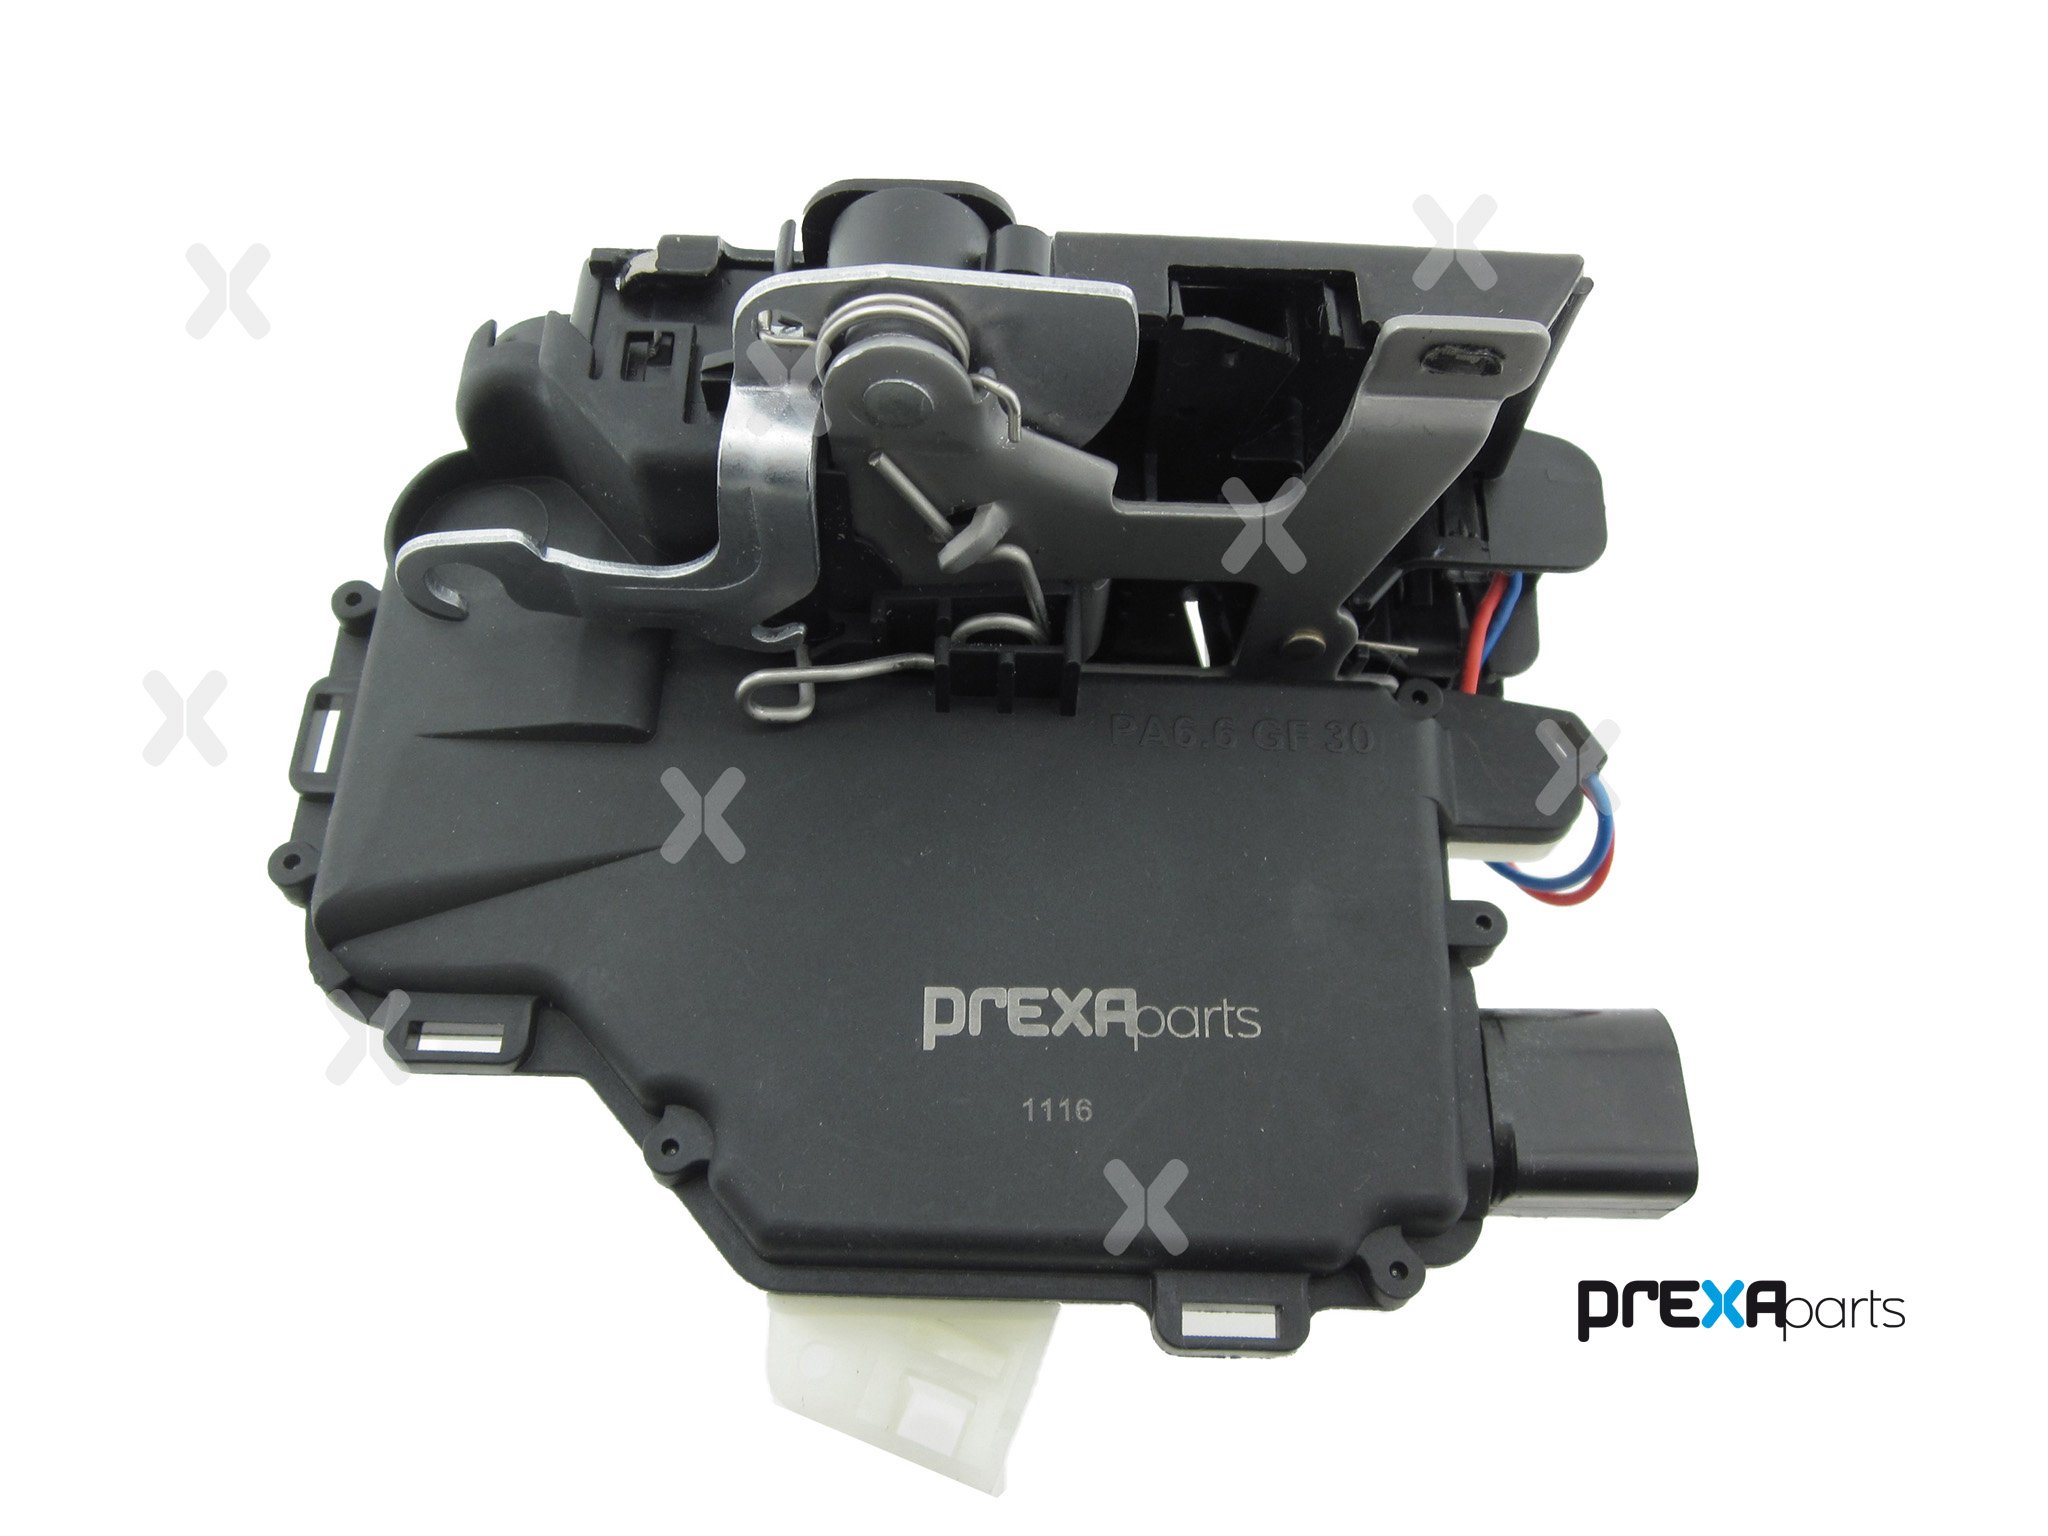 PREXAparts P111001